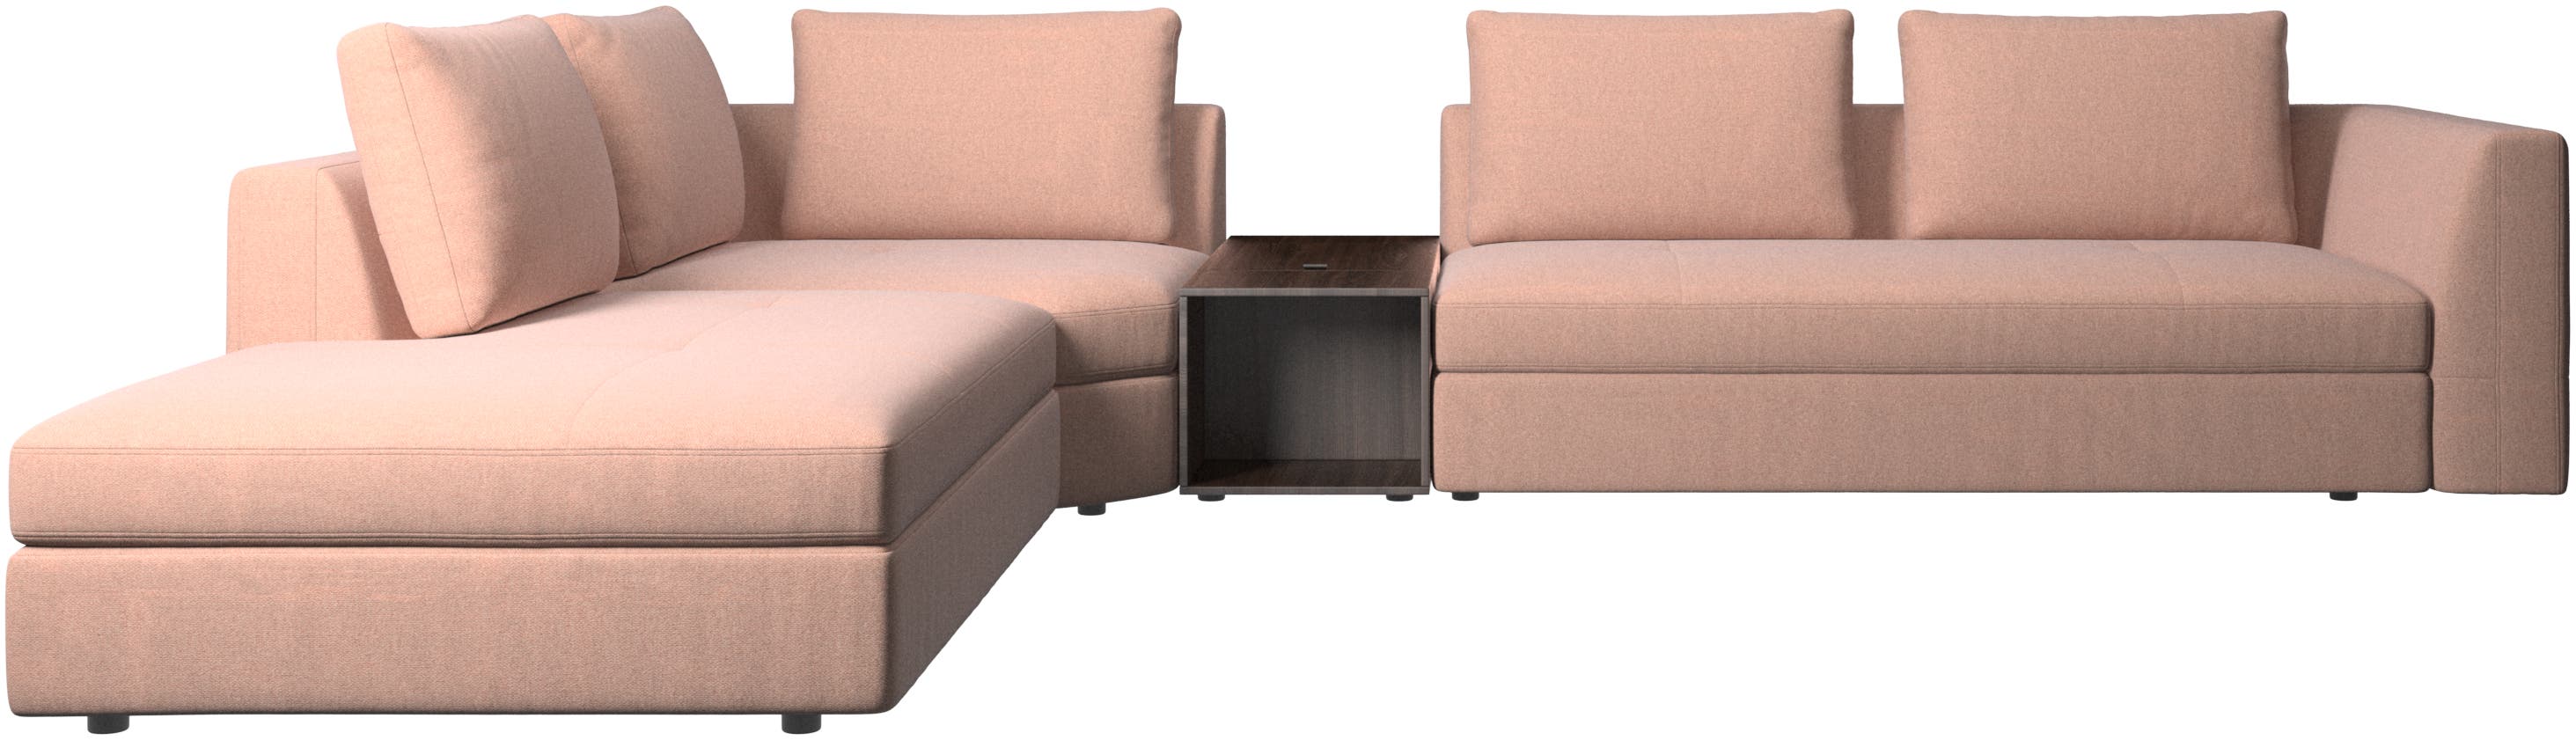 Sofa narożna Bergamo z szezlongiem i pufem ze schowkiem